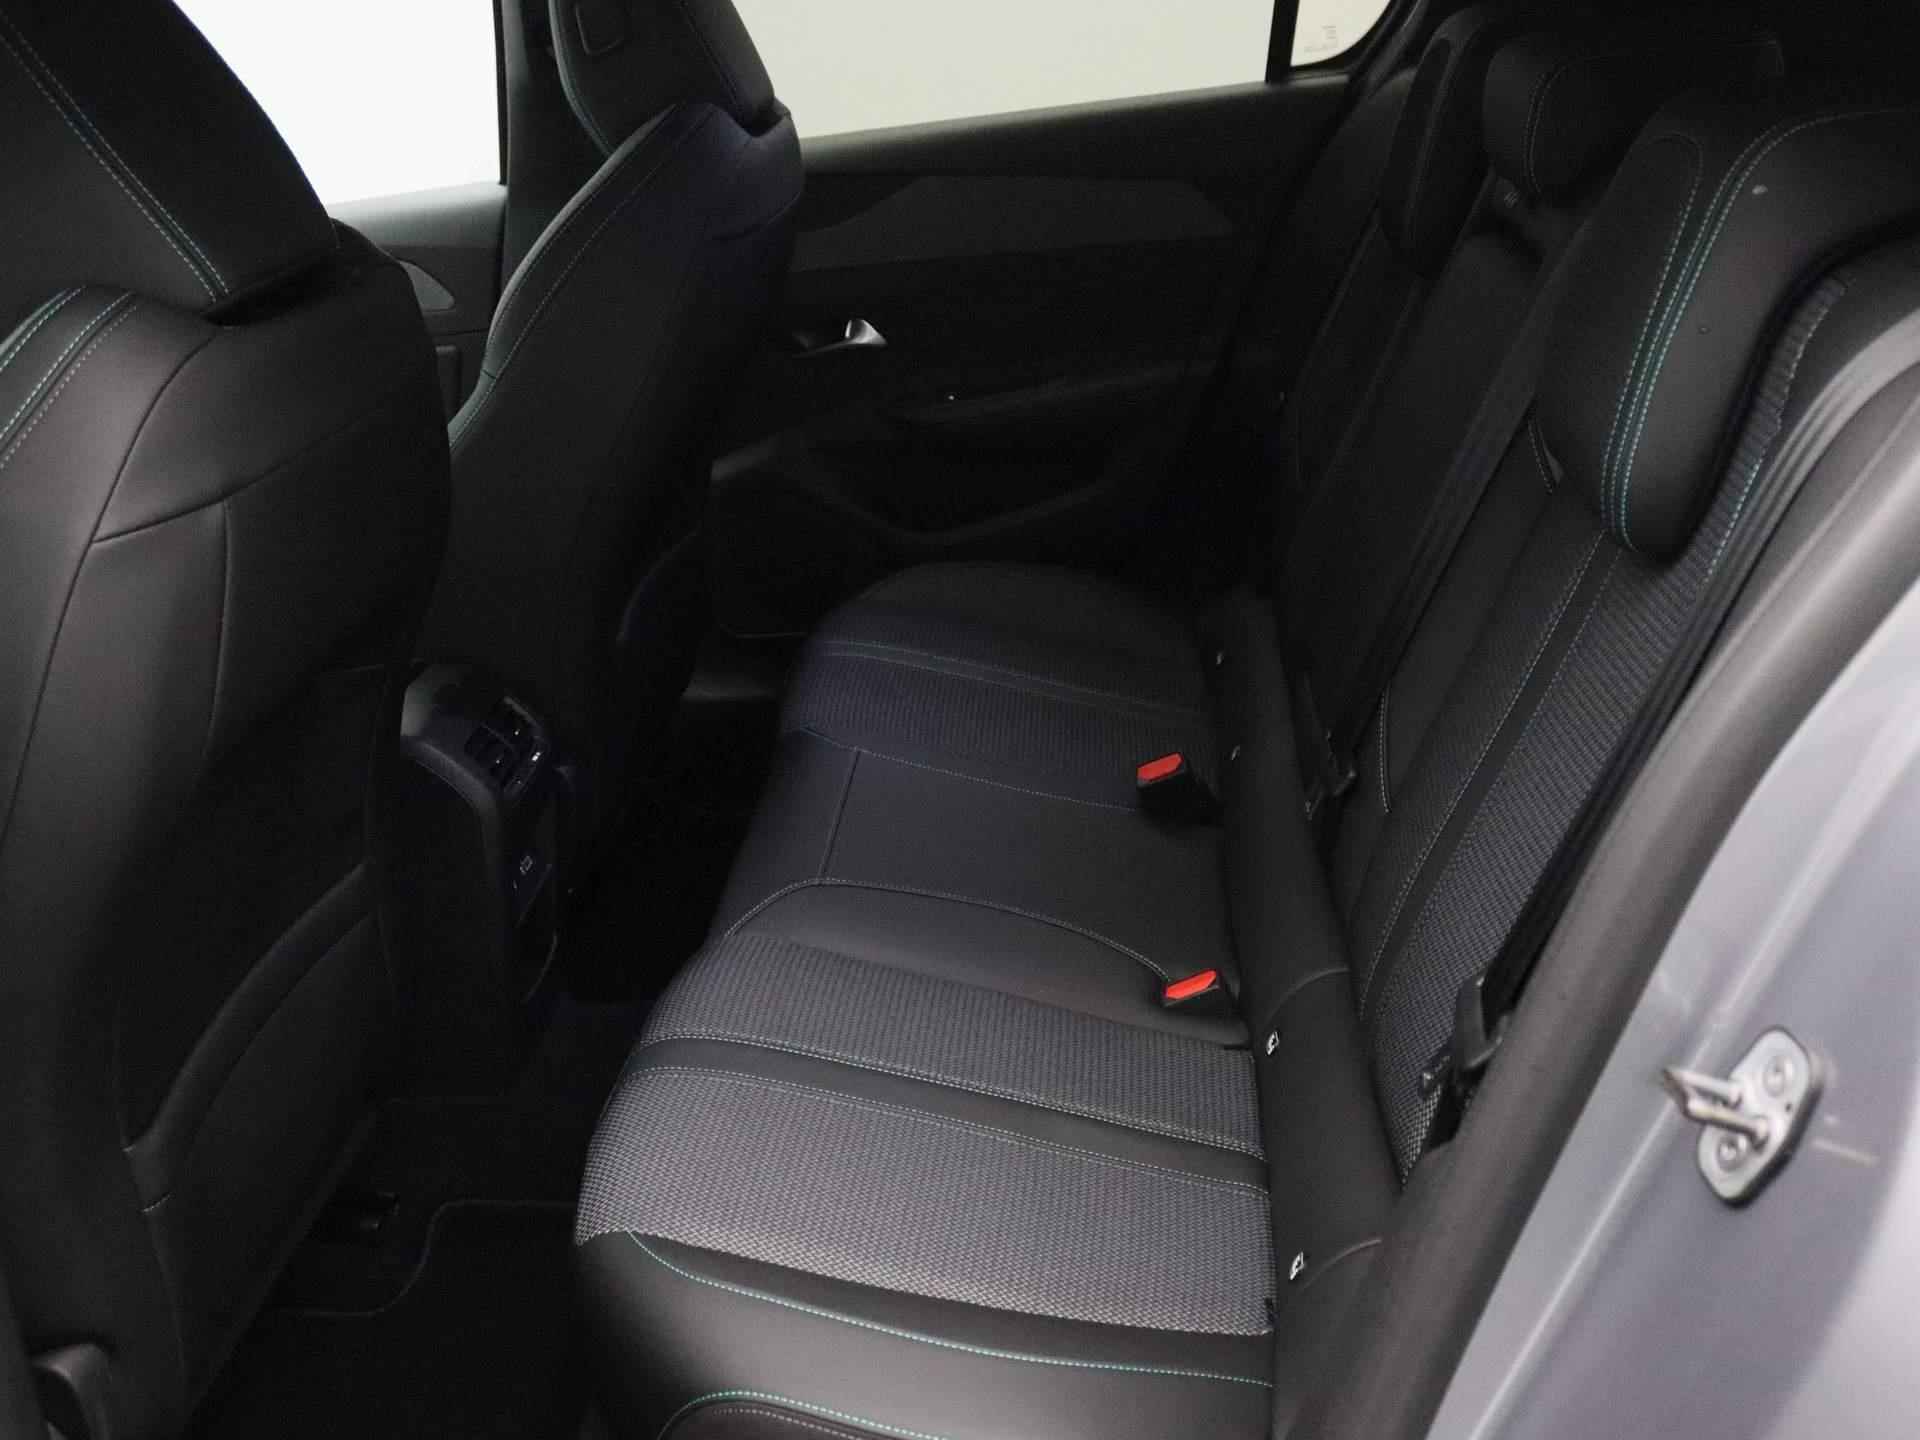 Peugeot 308 1.6 HYbrid 180 Allure Pack Business | Navigatie | Parkeercamera voor en achter + parkeersensoren voor enachter | 360 graden camera | Adaptieve cruise control - 12/30